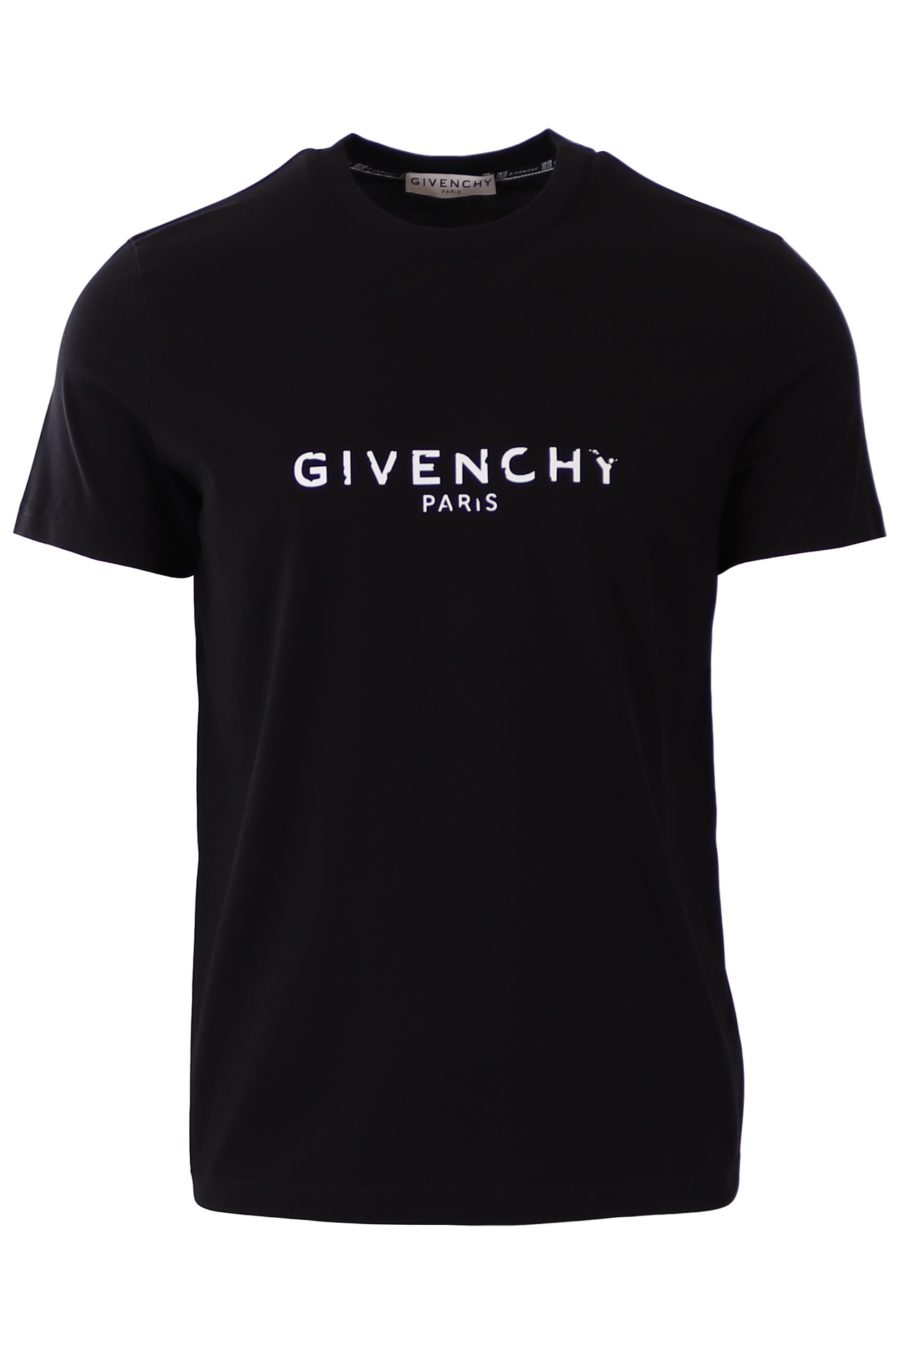 T-shirt preta de corte justo Givenchy Paris - 75b20a6c0b19f1ac411df0cae6c02b08ce7f778d